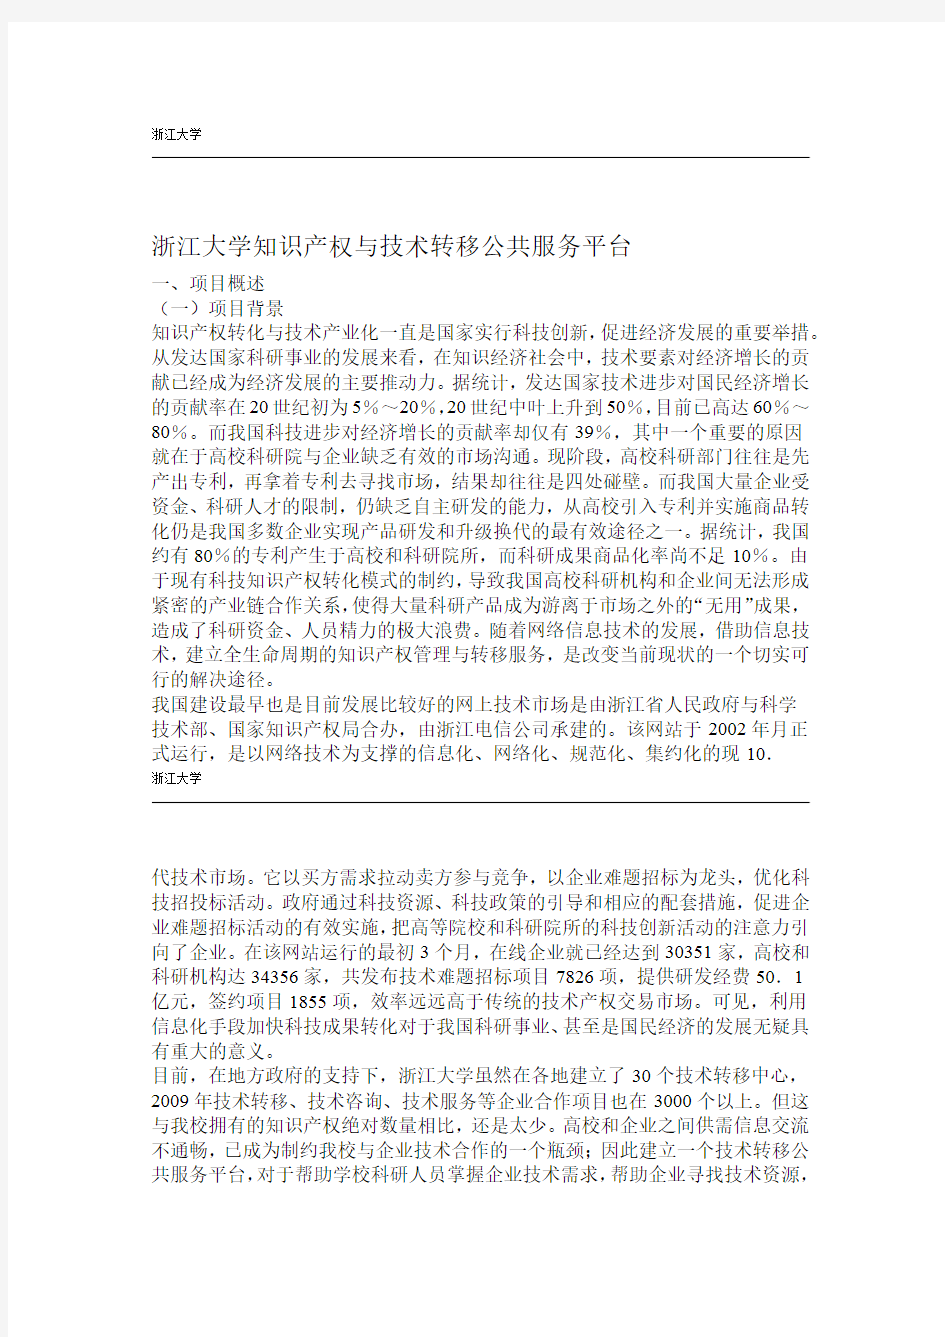 浙江大学知识产权与技术转移公共服务平台文档要点